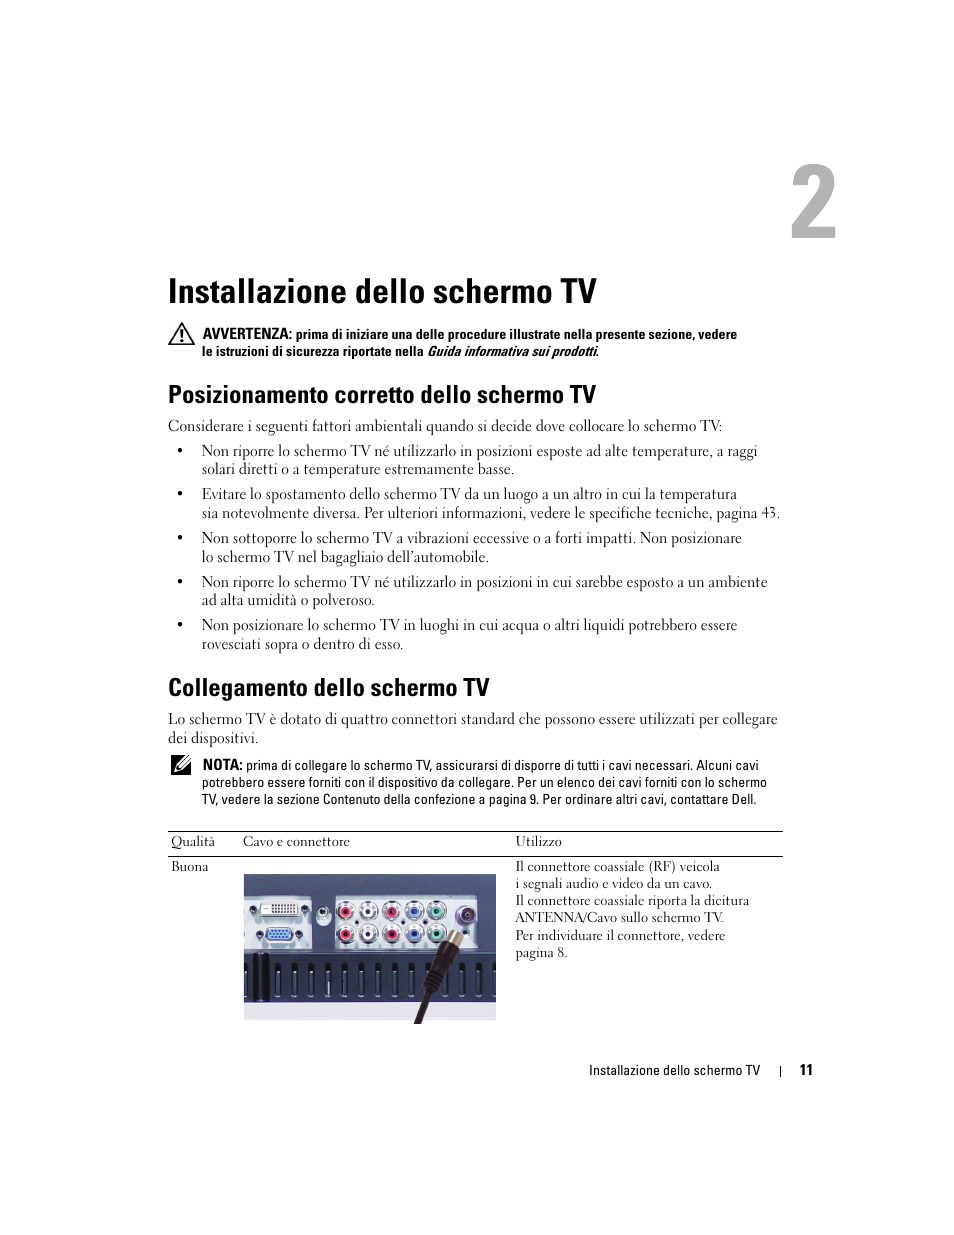 Installazione dello schermo tv, Posizionamento corretto dello schermo tv, Collegamento dello schermo tv | 2 installazione dello schermo tv | Dell W1900 Manuale d'uso | Pagina 11 / 48